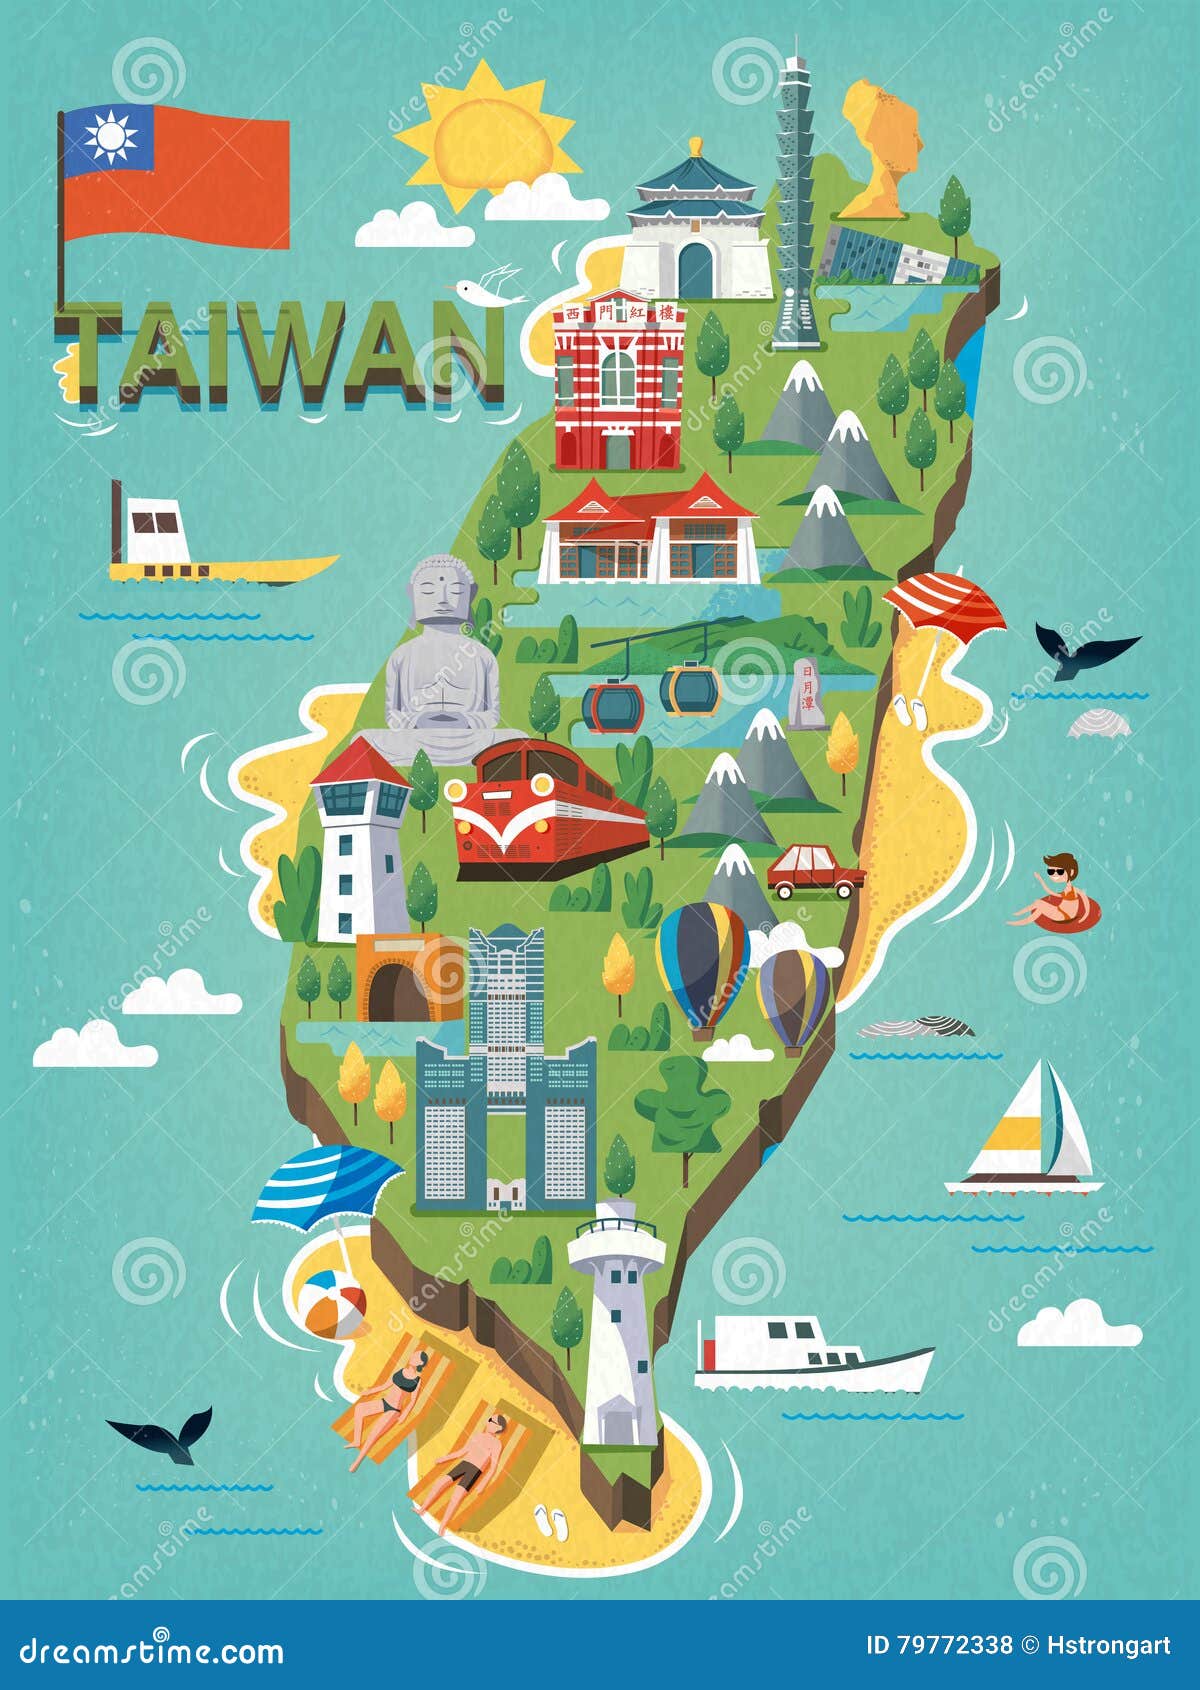 台湾旅行地图库存例证 插画包括有台湾旅行地图 79772338